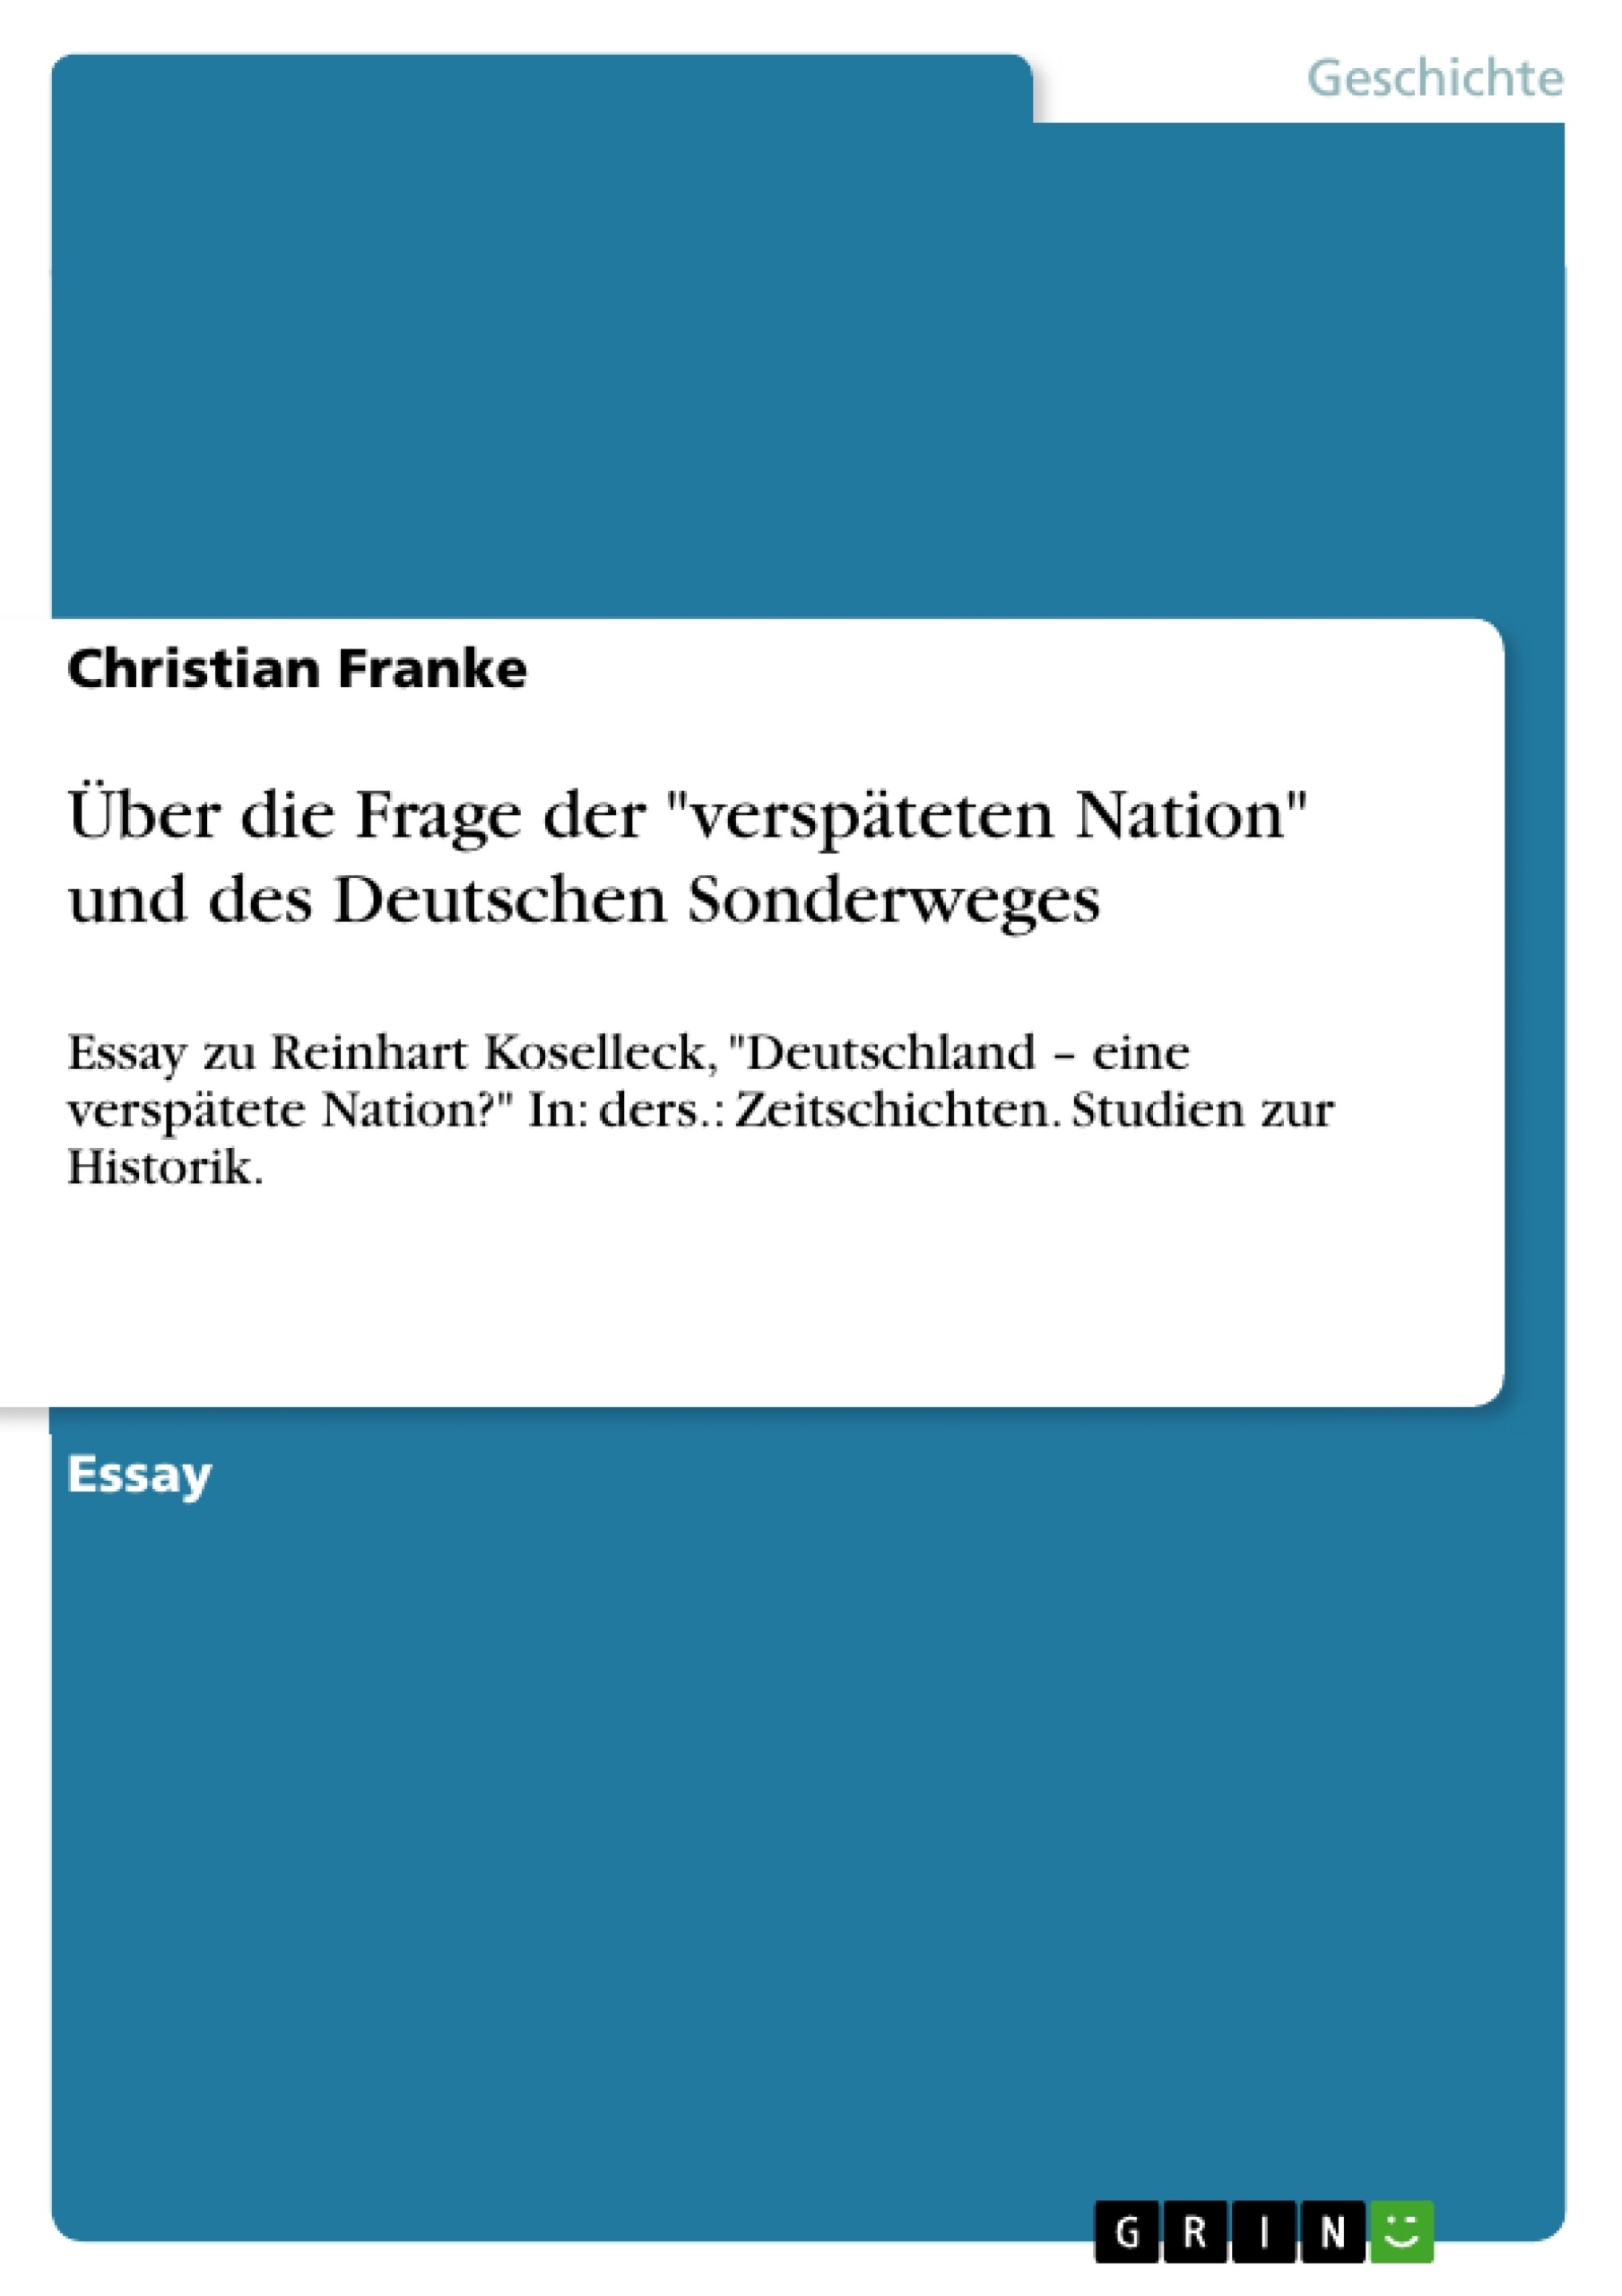 Título: Über die Frage der "verspäteten Nation" und des Deutschen Sonderweges